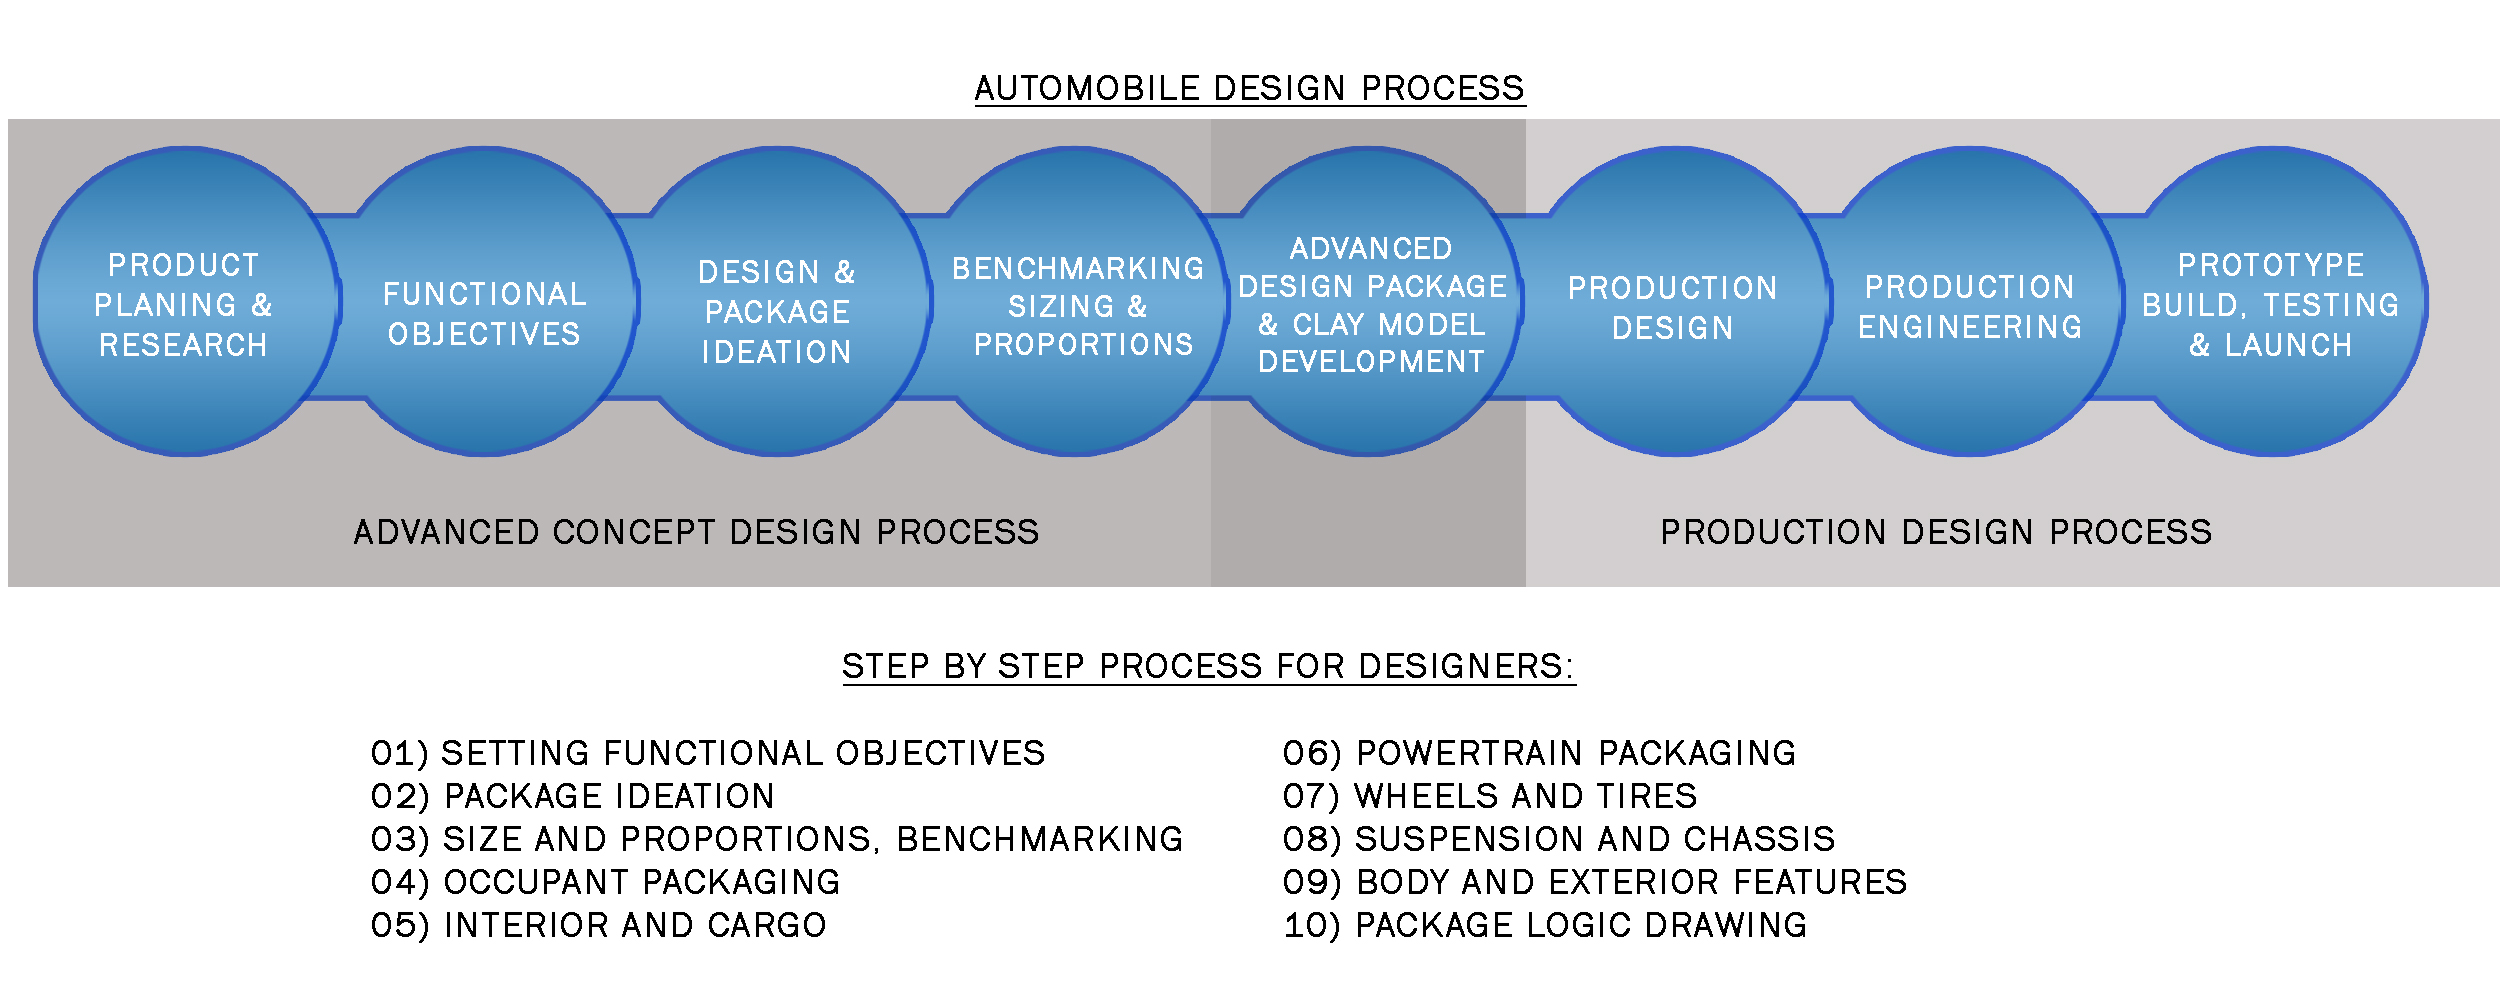 Automobile-Design-Process